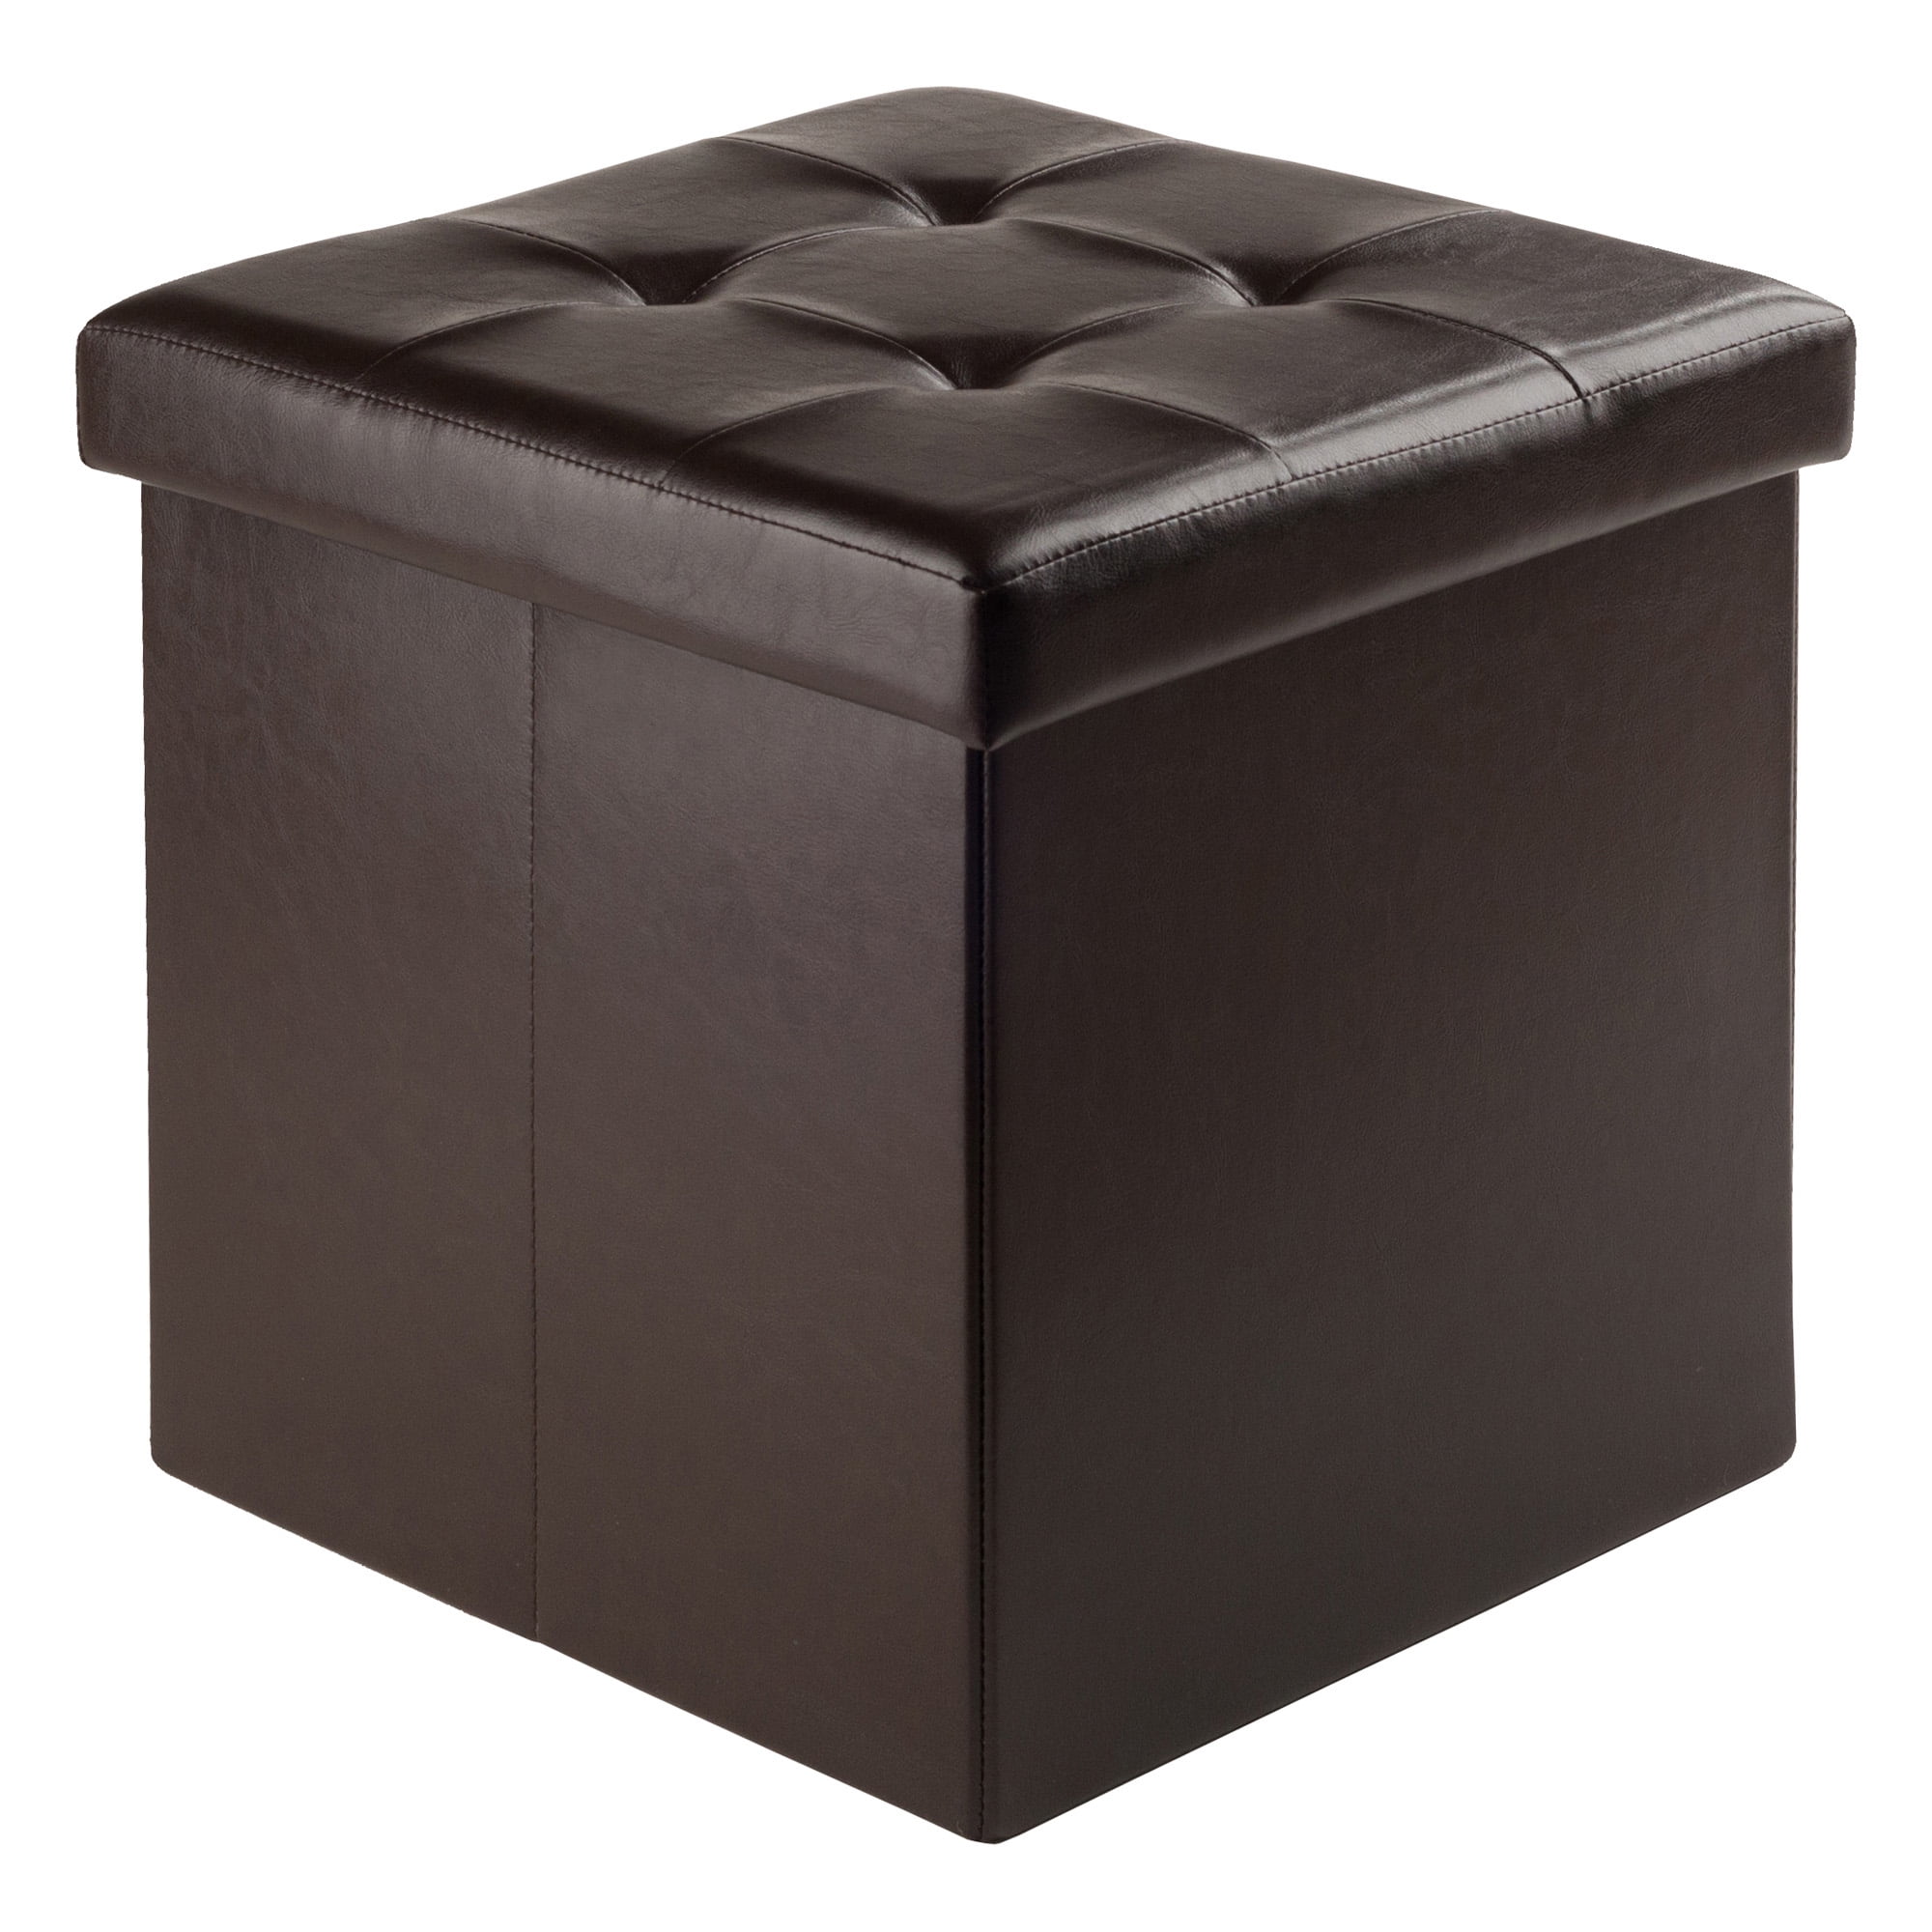 X-LARGE Large Folding Ottoman Storage Box Faux Leather Pouffe Footstool Seat UK 